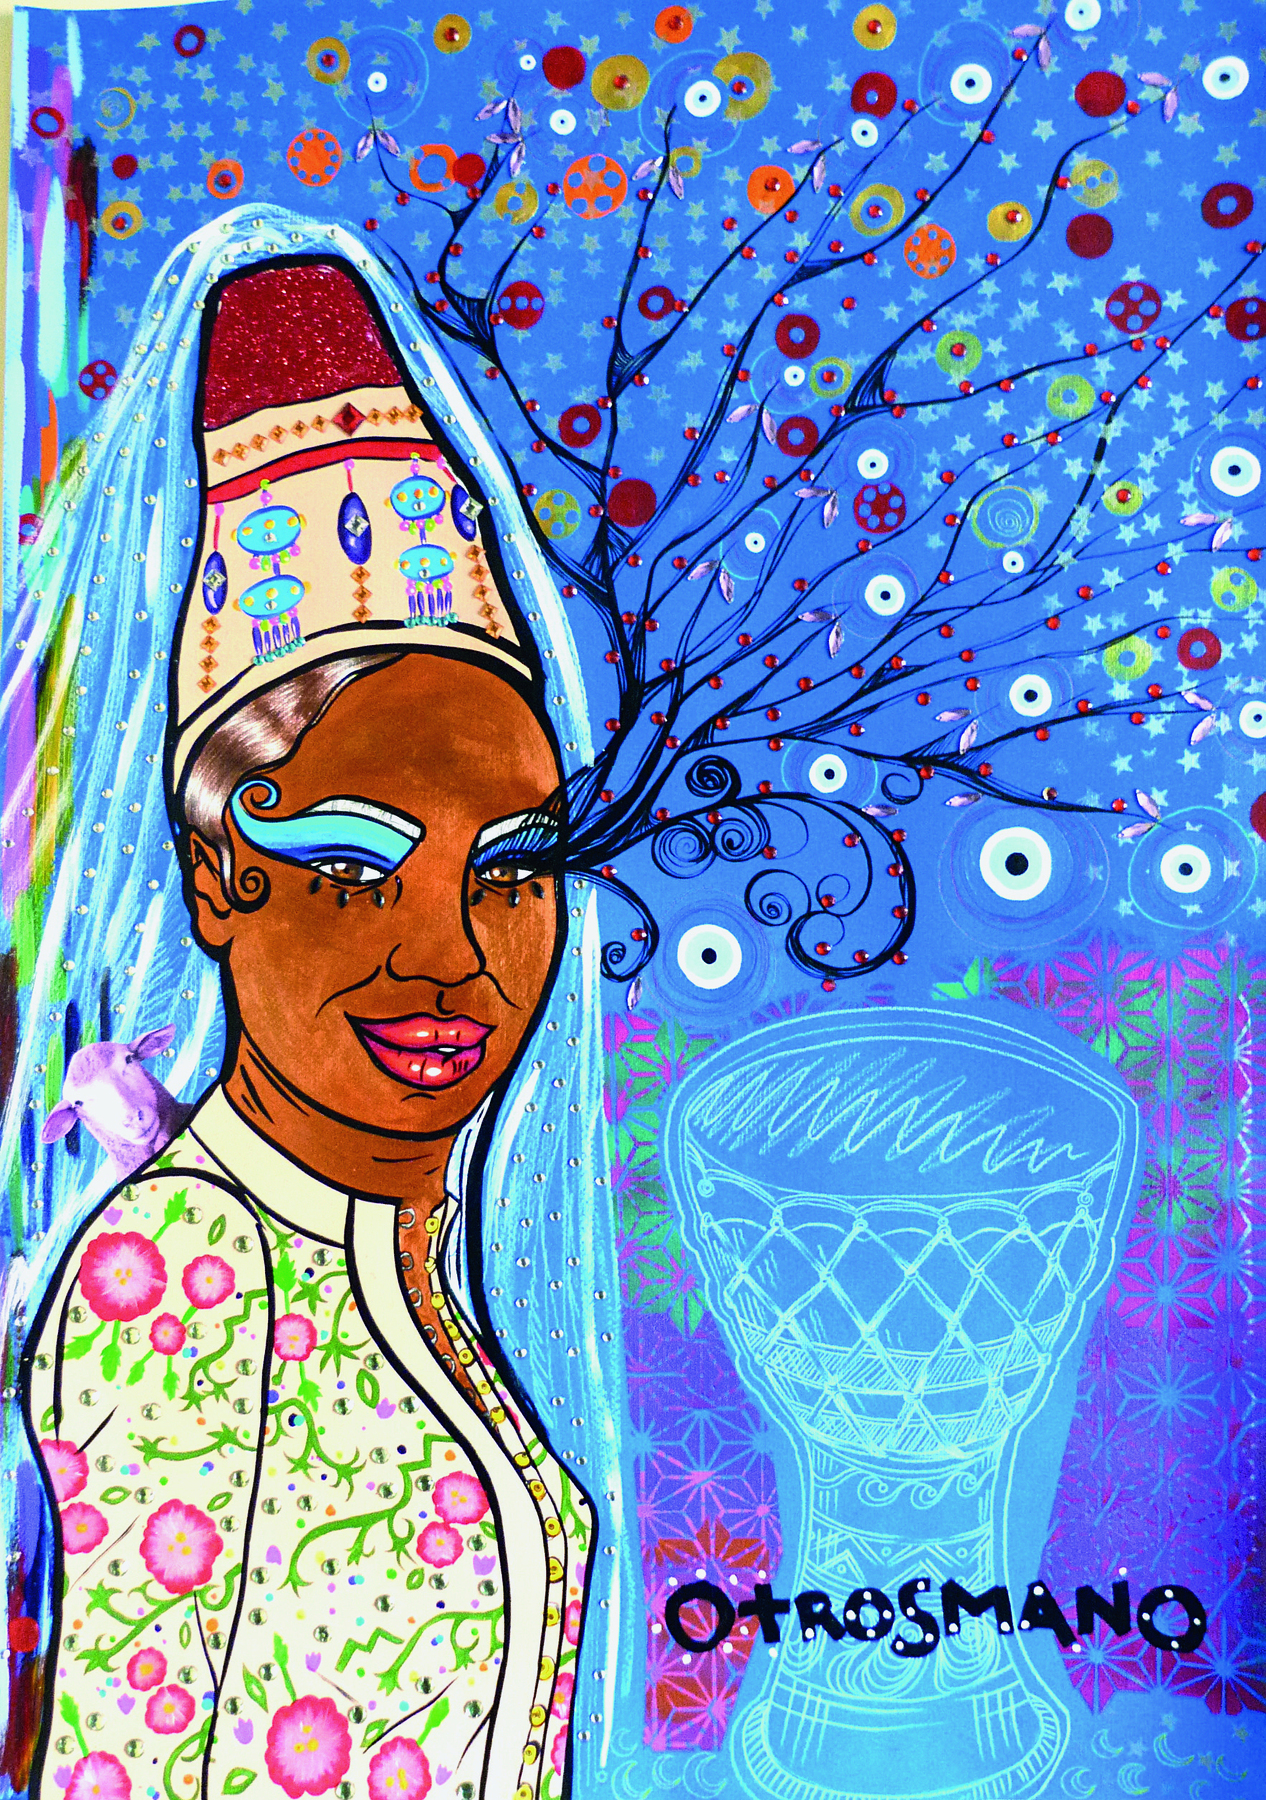 Pintura. Uma mulher retratada em um fundo azul. Ela está usando uma blusa estampada com flores e um chapéu alto, estampado em azul, marrom e bege. Do topo do chapéu sai um véu azulado que cobre suas costas. Os olhos da mulher  estão pintados com sombra azul e delineador preto, e dos cílios do olho esquerdo saem ramificações com flores. Ao lado, um vaso, sobreposto, o texto: OTROSMANO.